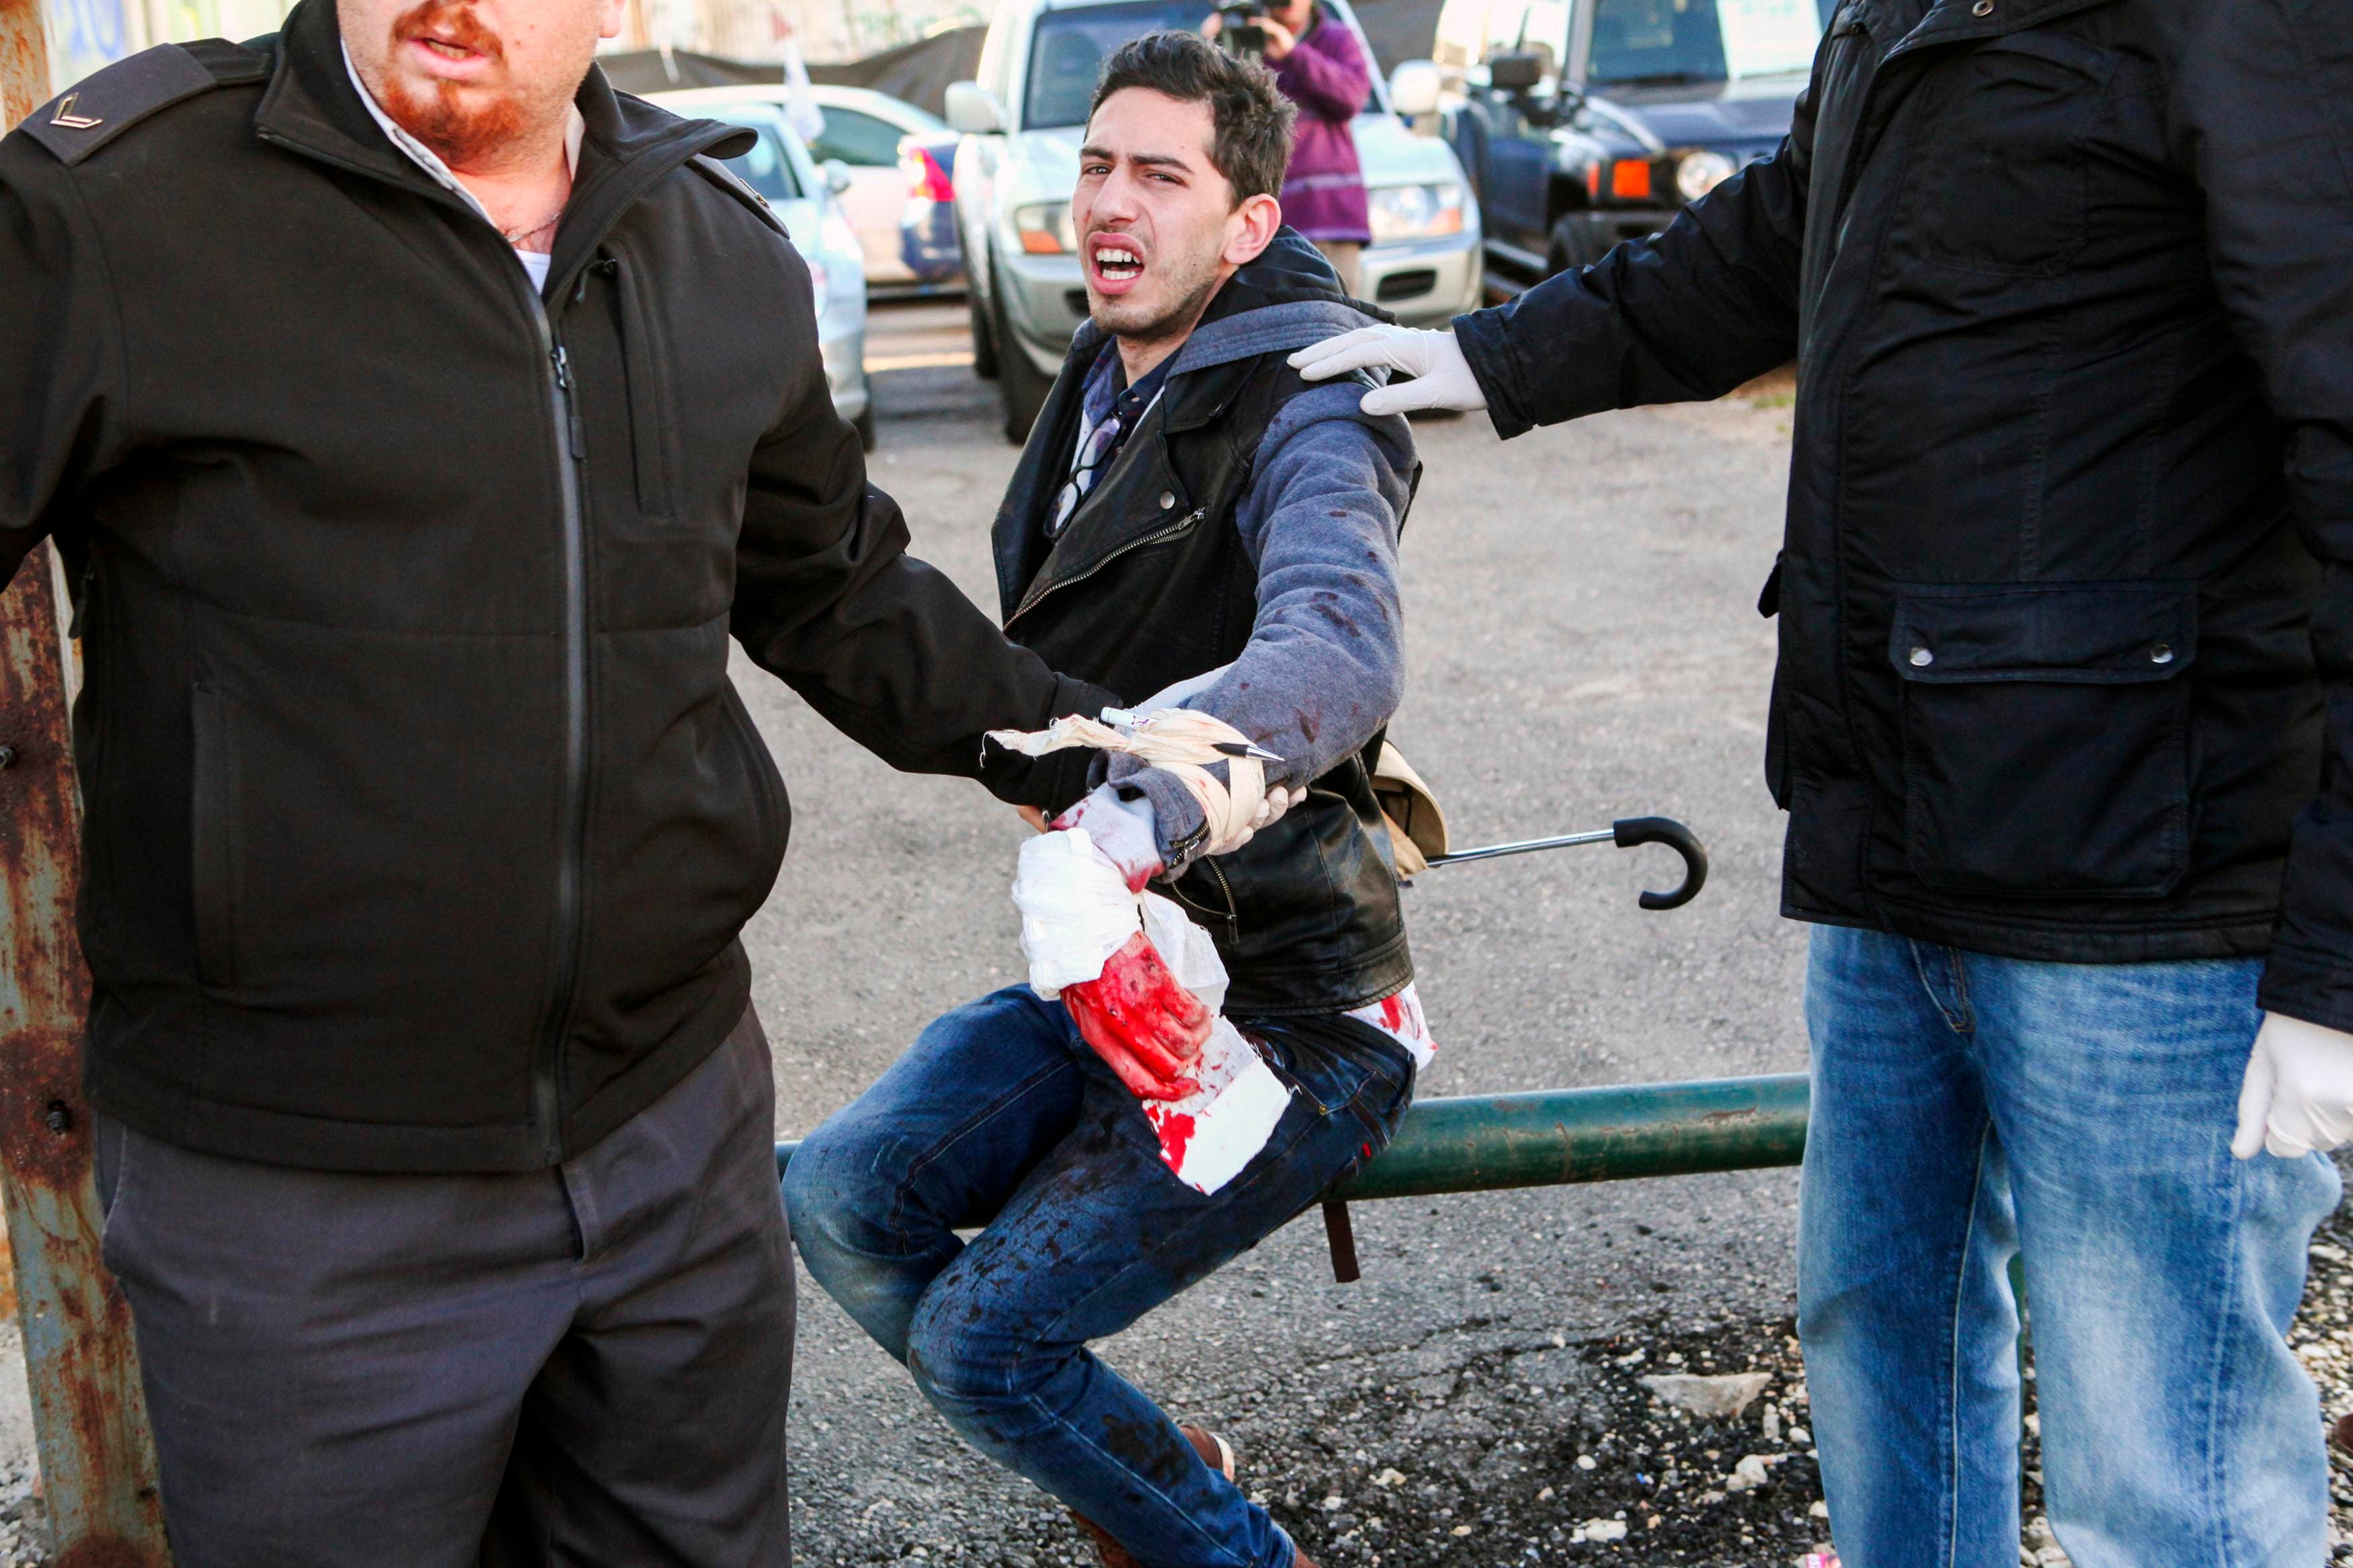 فلسطيني يطعن 13 إسرائيلياً بسكين في تل أبيب 515295f4-8504-4621-8594-a97803ad4c94